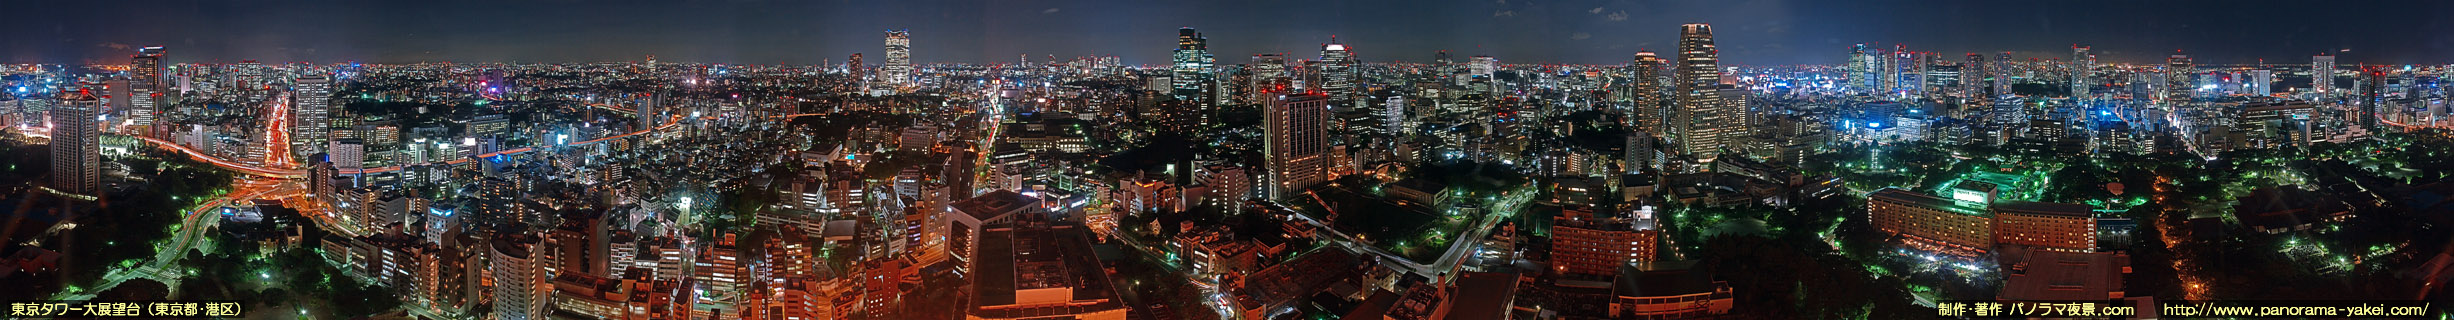 東京タワー大展望台からの360度パノラマ夜景写真